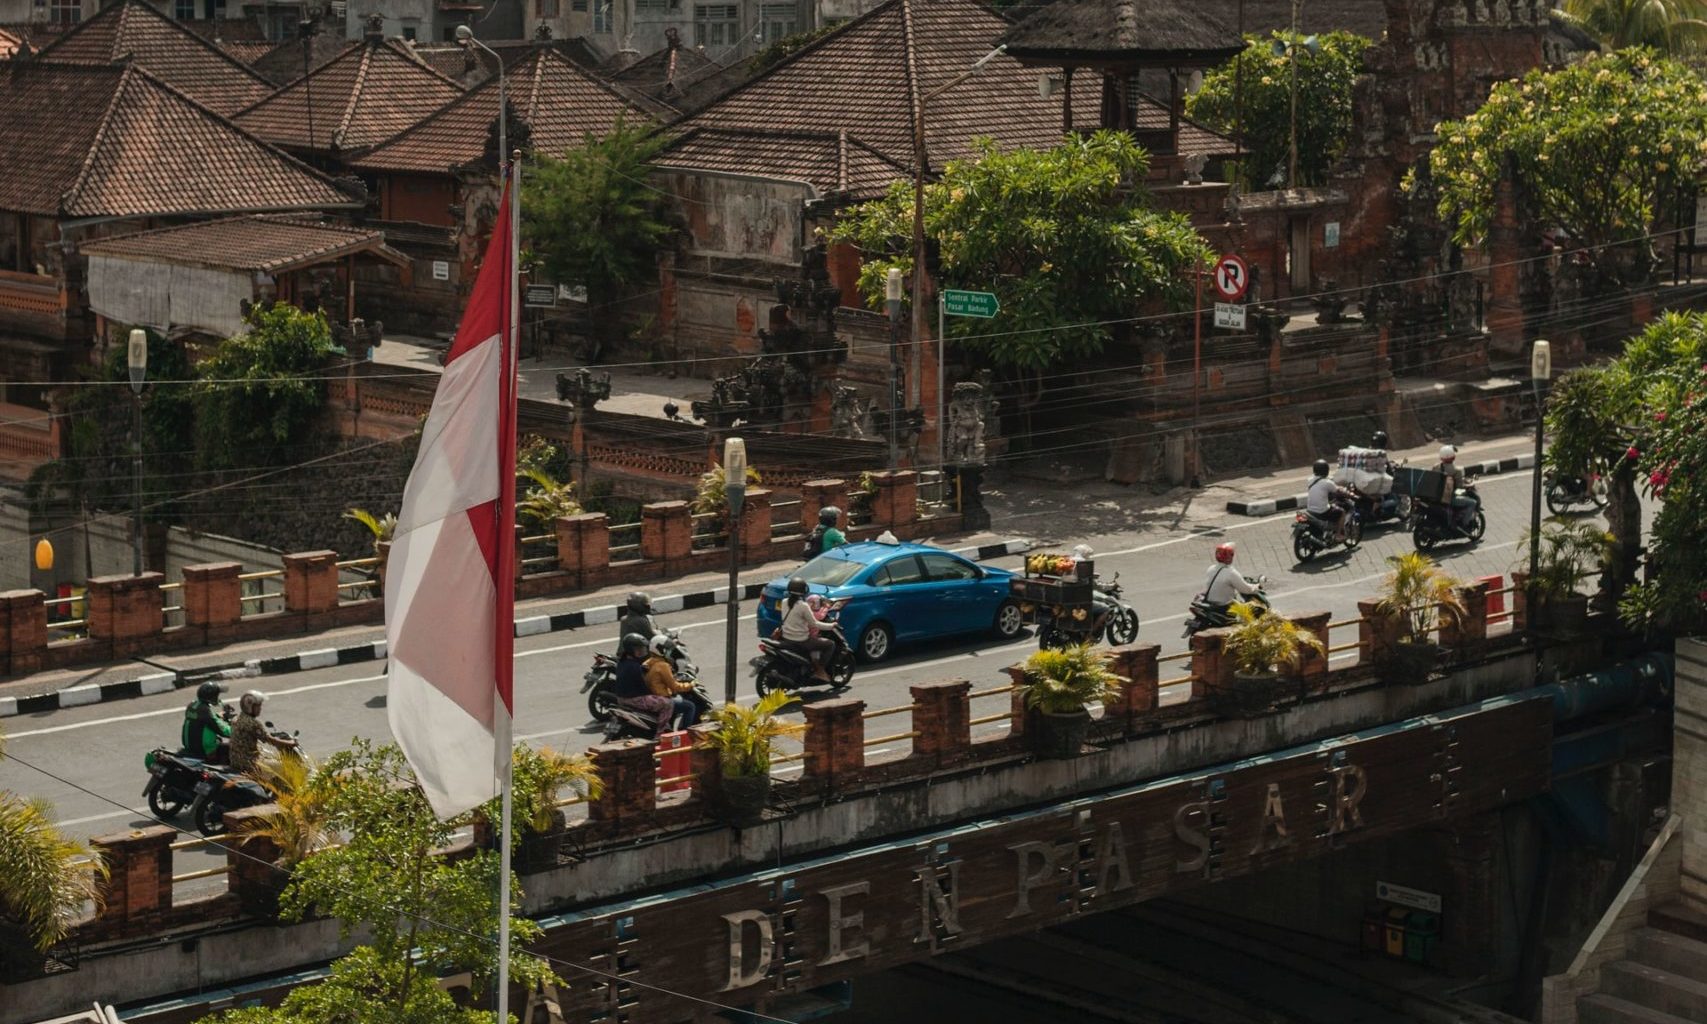 A scene taken in Denpasar city. Photo: Unsplash/Dendy Darma